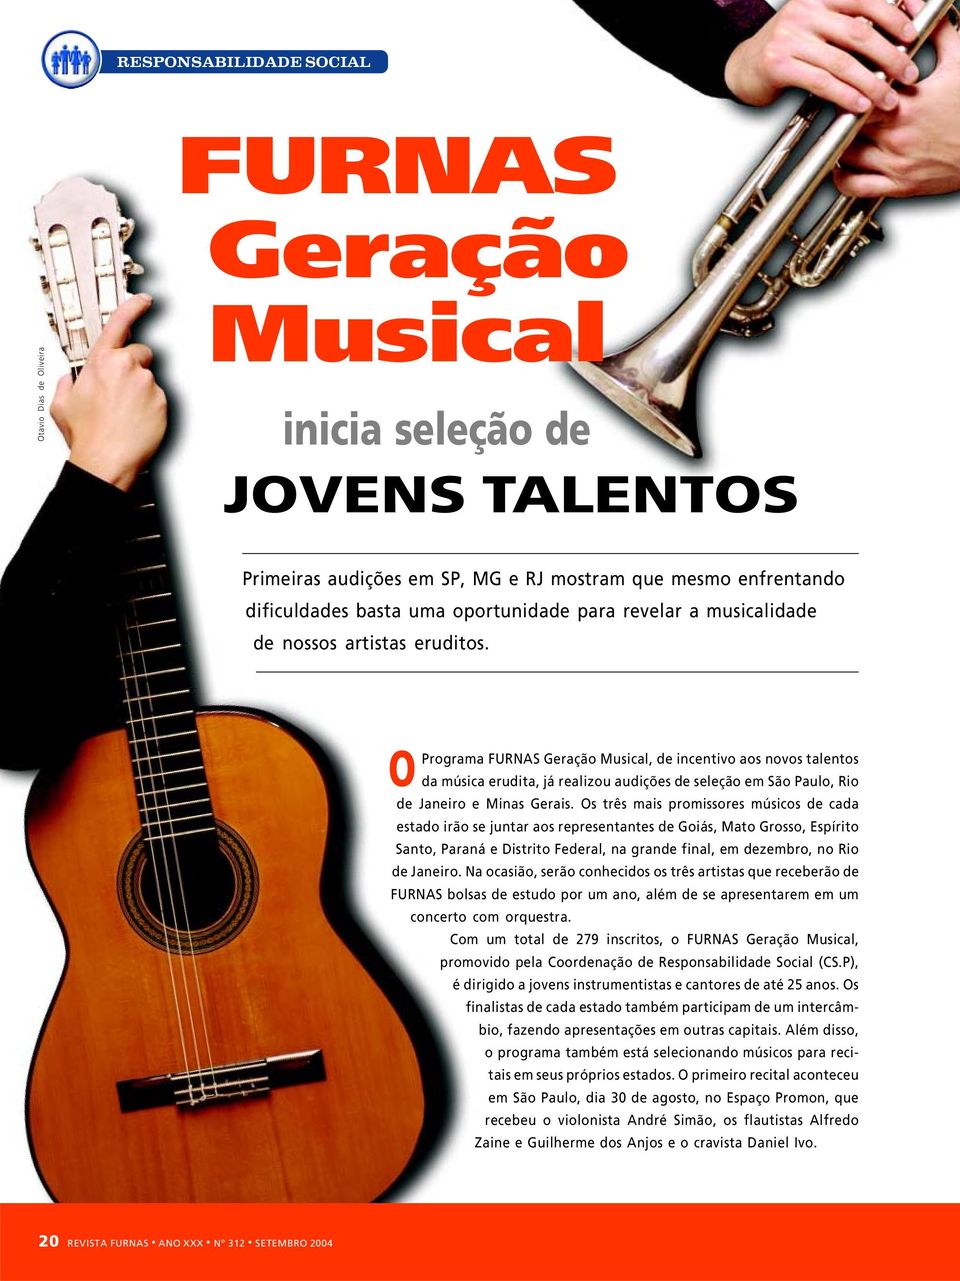 O Programa FURNAS Geração Musical, de incentivo aos novos talentos da música erudita, já realizou audições de seleção em São Paulo, Rio de Janeiro e Minas Gerais.